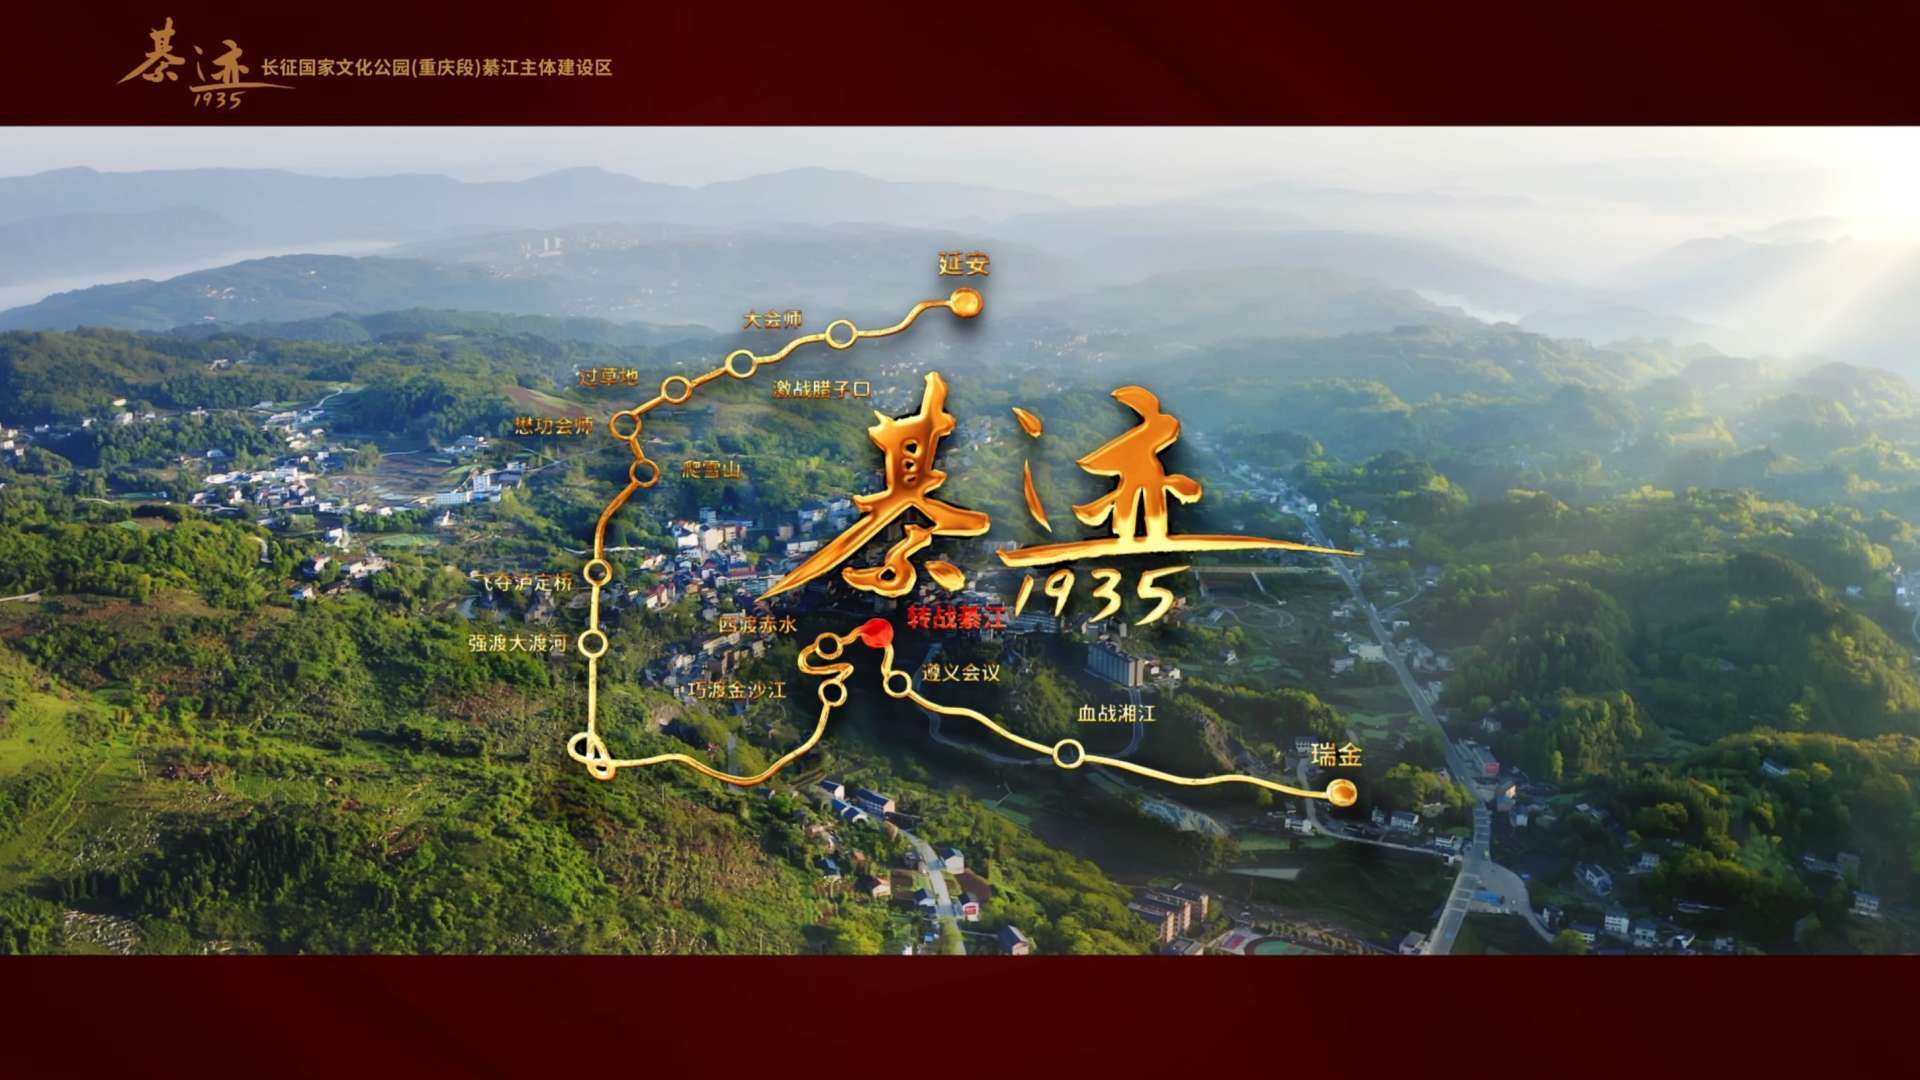 国家长征主题公园（重庆段）宣传片《綦迹》